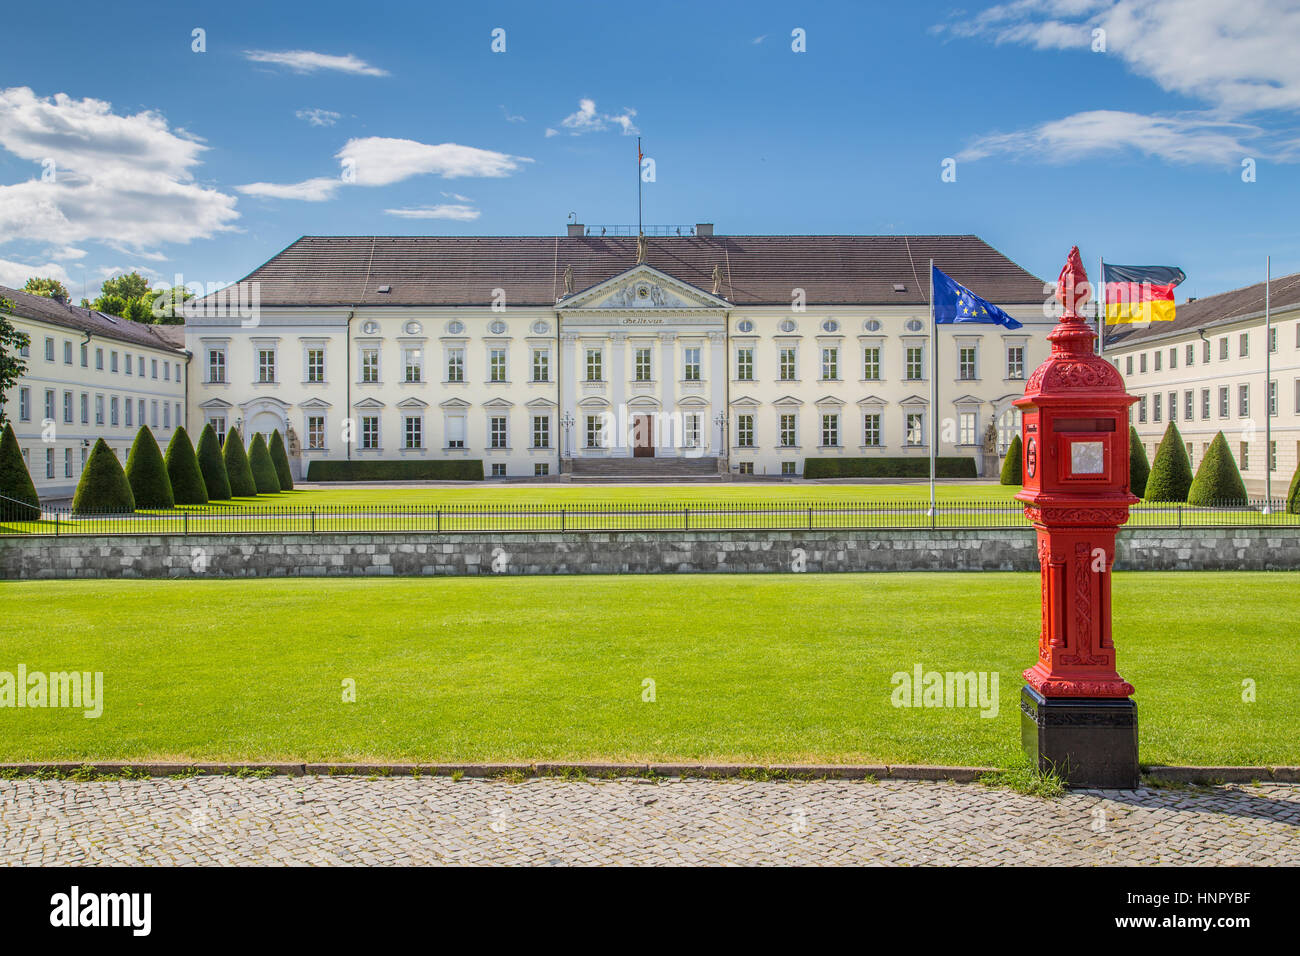 Visualizzazione classica del famoso Schloss Bellevue, residenza ufficiale del Presidente della Repubblica federale di Germania, con il fuoco di post in una giornata di sole, Berlino Foto Stock